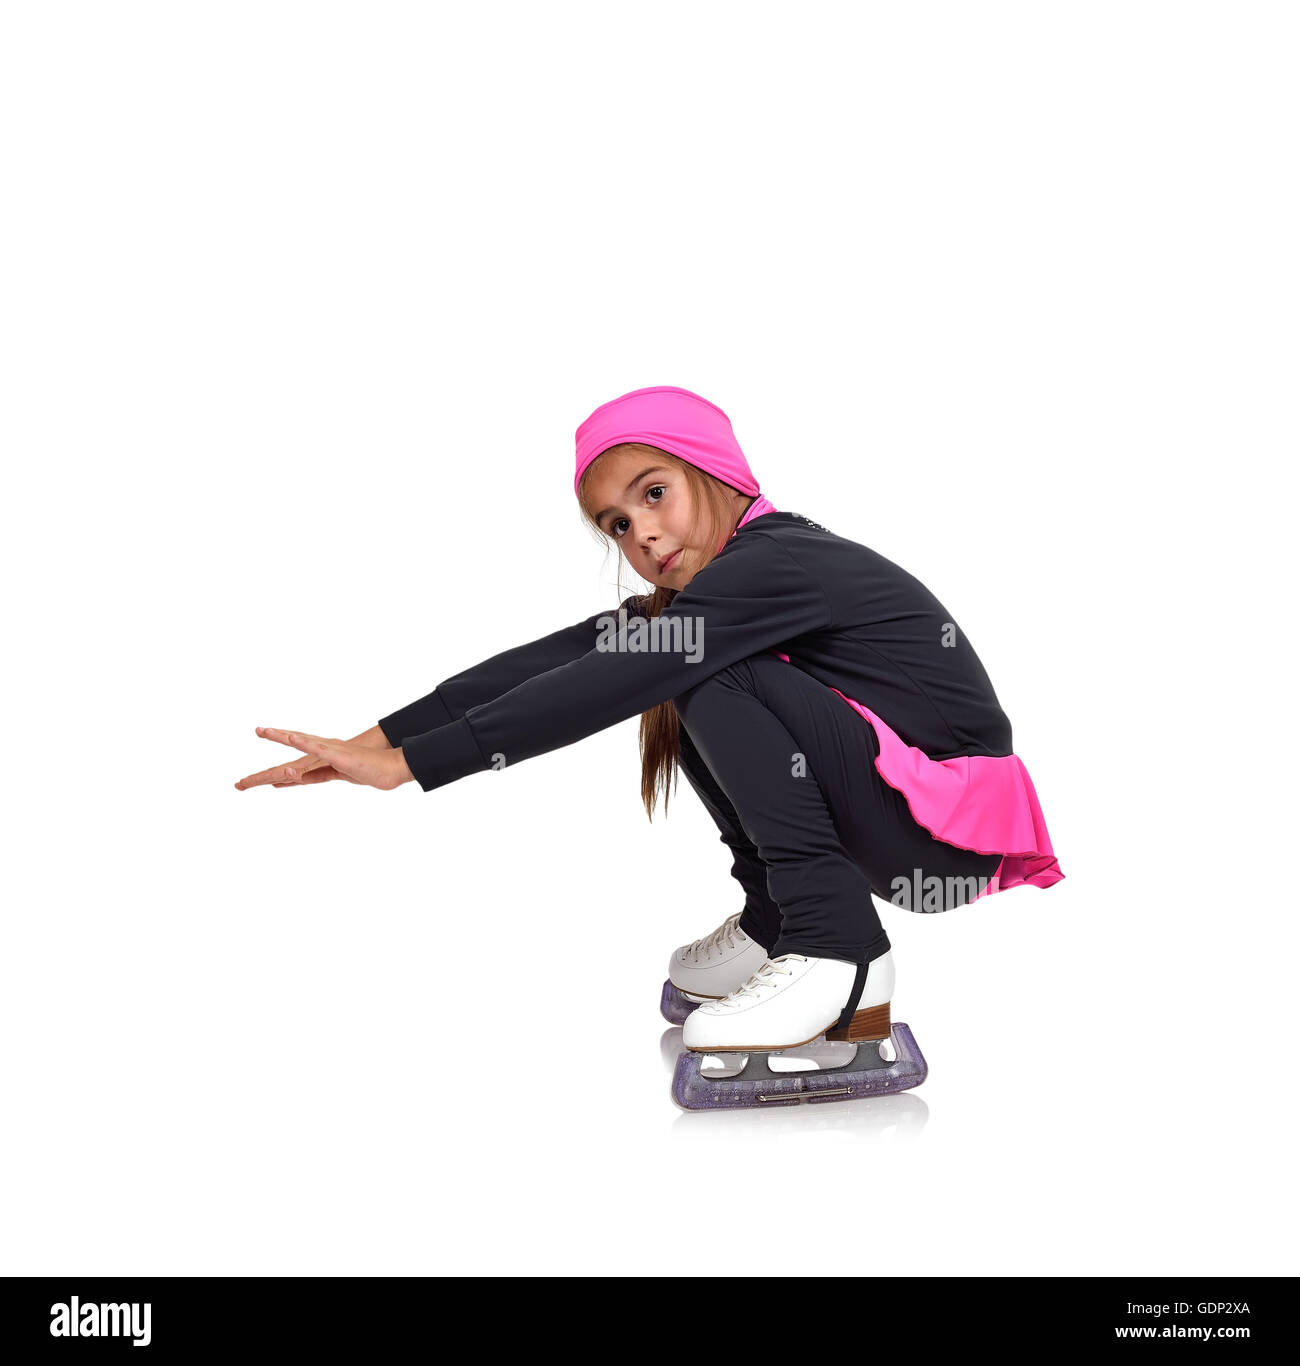 Petite fille figure skating sur fond blanc Banque D'Images